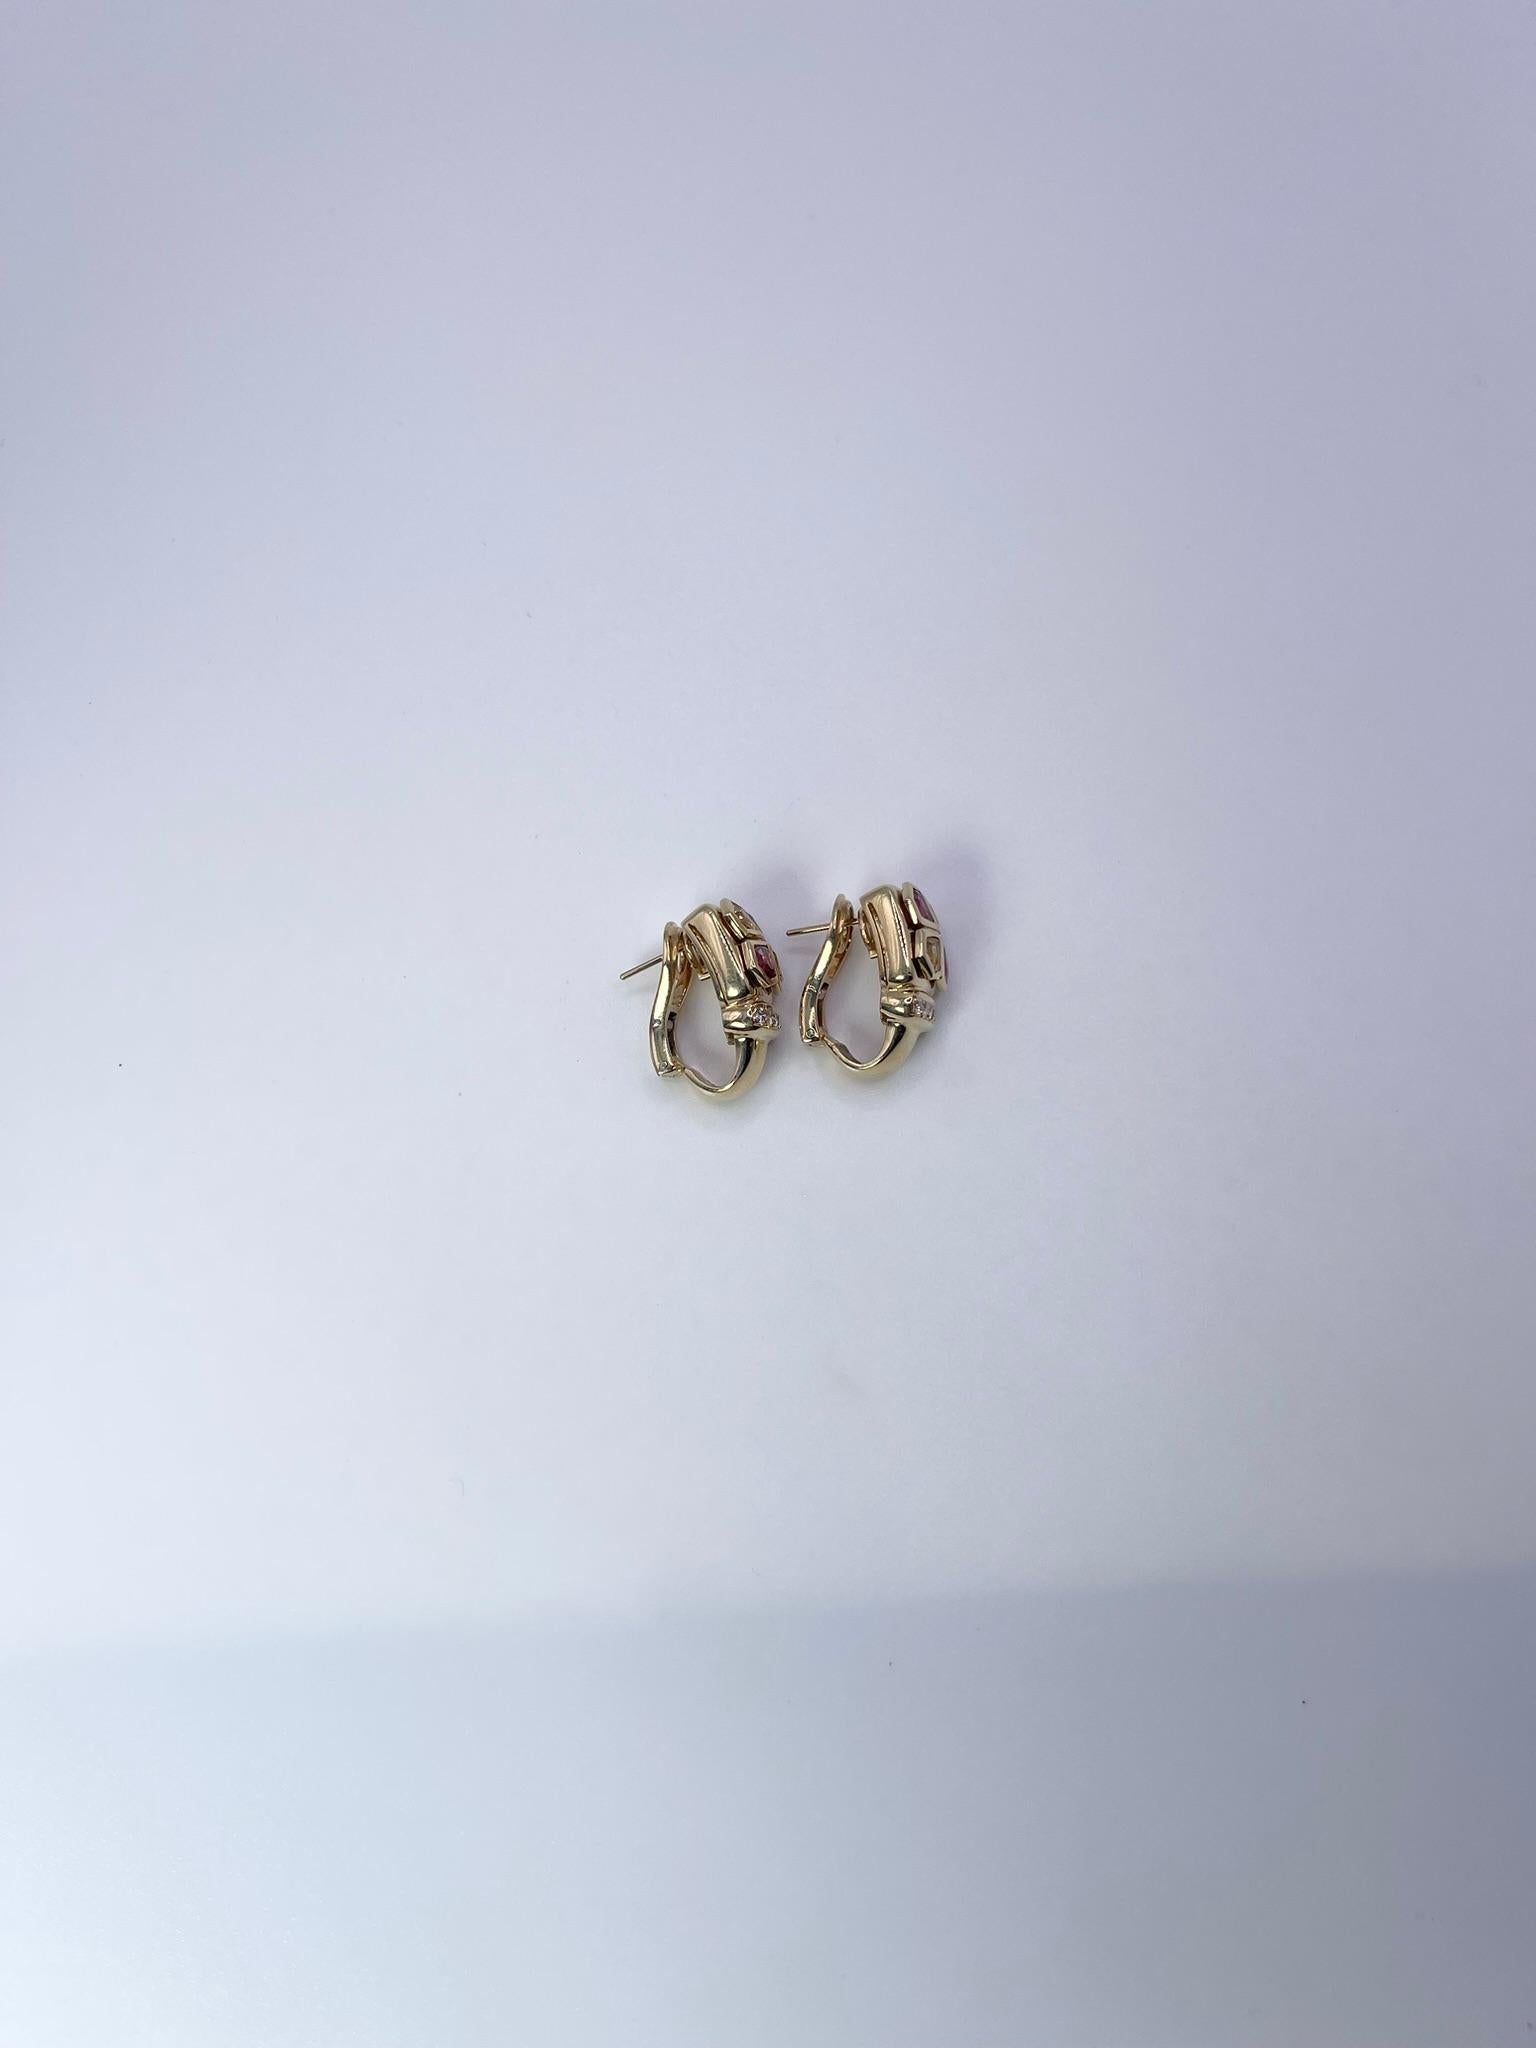 Boucles d'oreilles rares et uniques en diamants, avec rubis et saphirs. Toutes les pierres sont 100% naturelles et non traitées. Les boucles d'oreilles ont un support en oméga et sont de style Art Déco.
POIDS EN GRAMME : 16.69gr
OR : or jaune